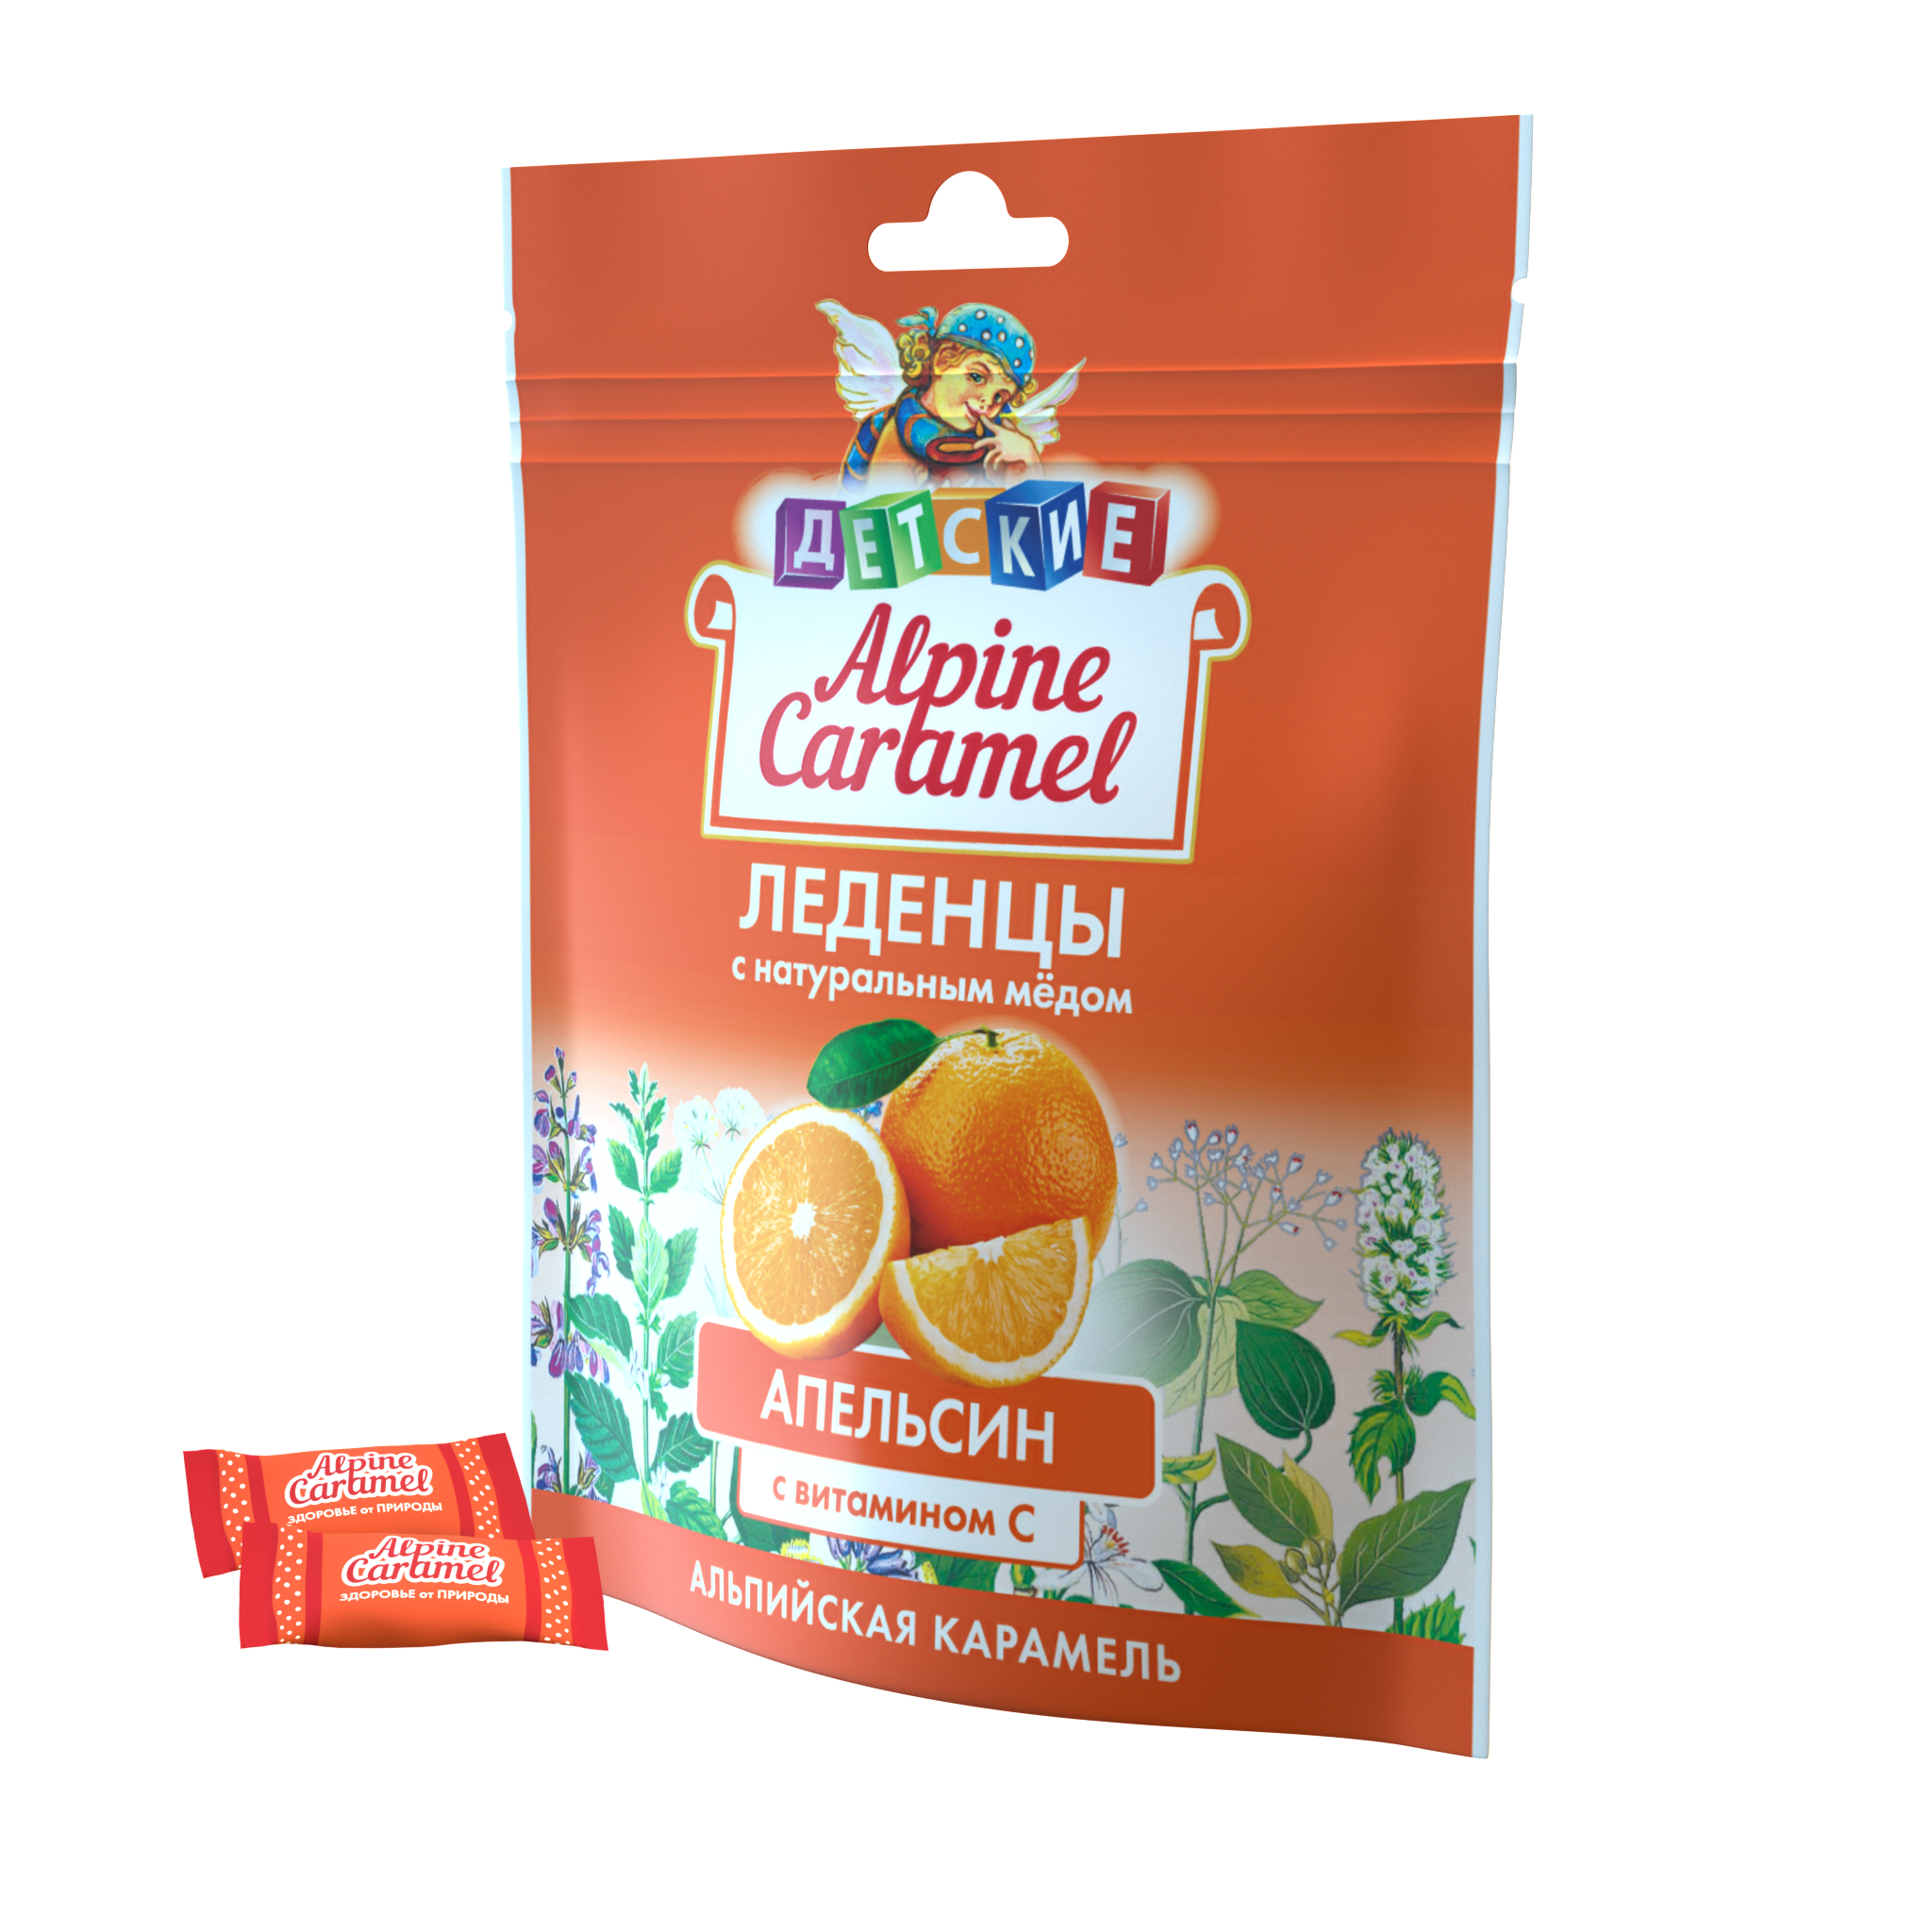 Alpine Caramel Альпийская Карамель леденцы дет (апельсин с медом и витамином С), 75 г альпийская карамель леденцы 75 г 1 шт малина